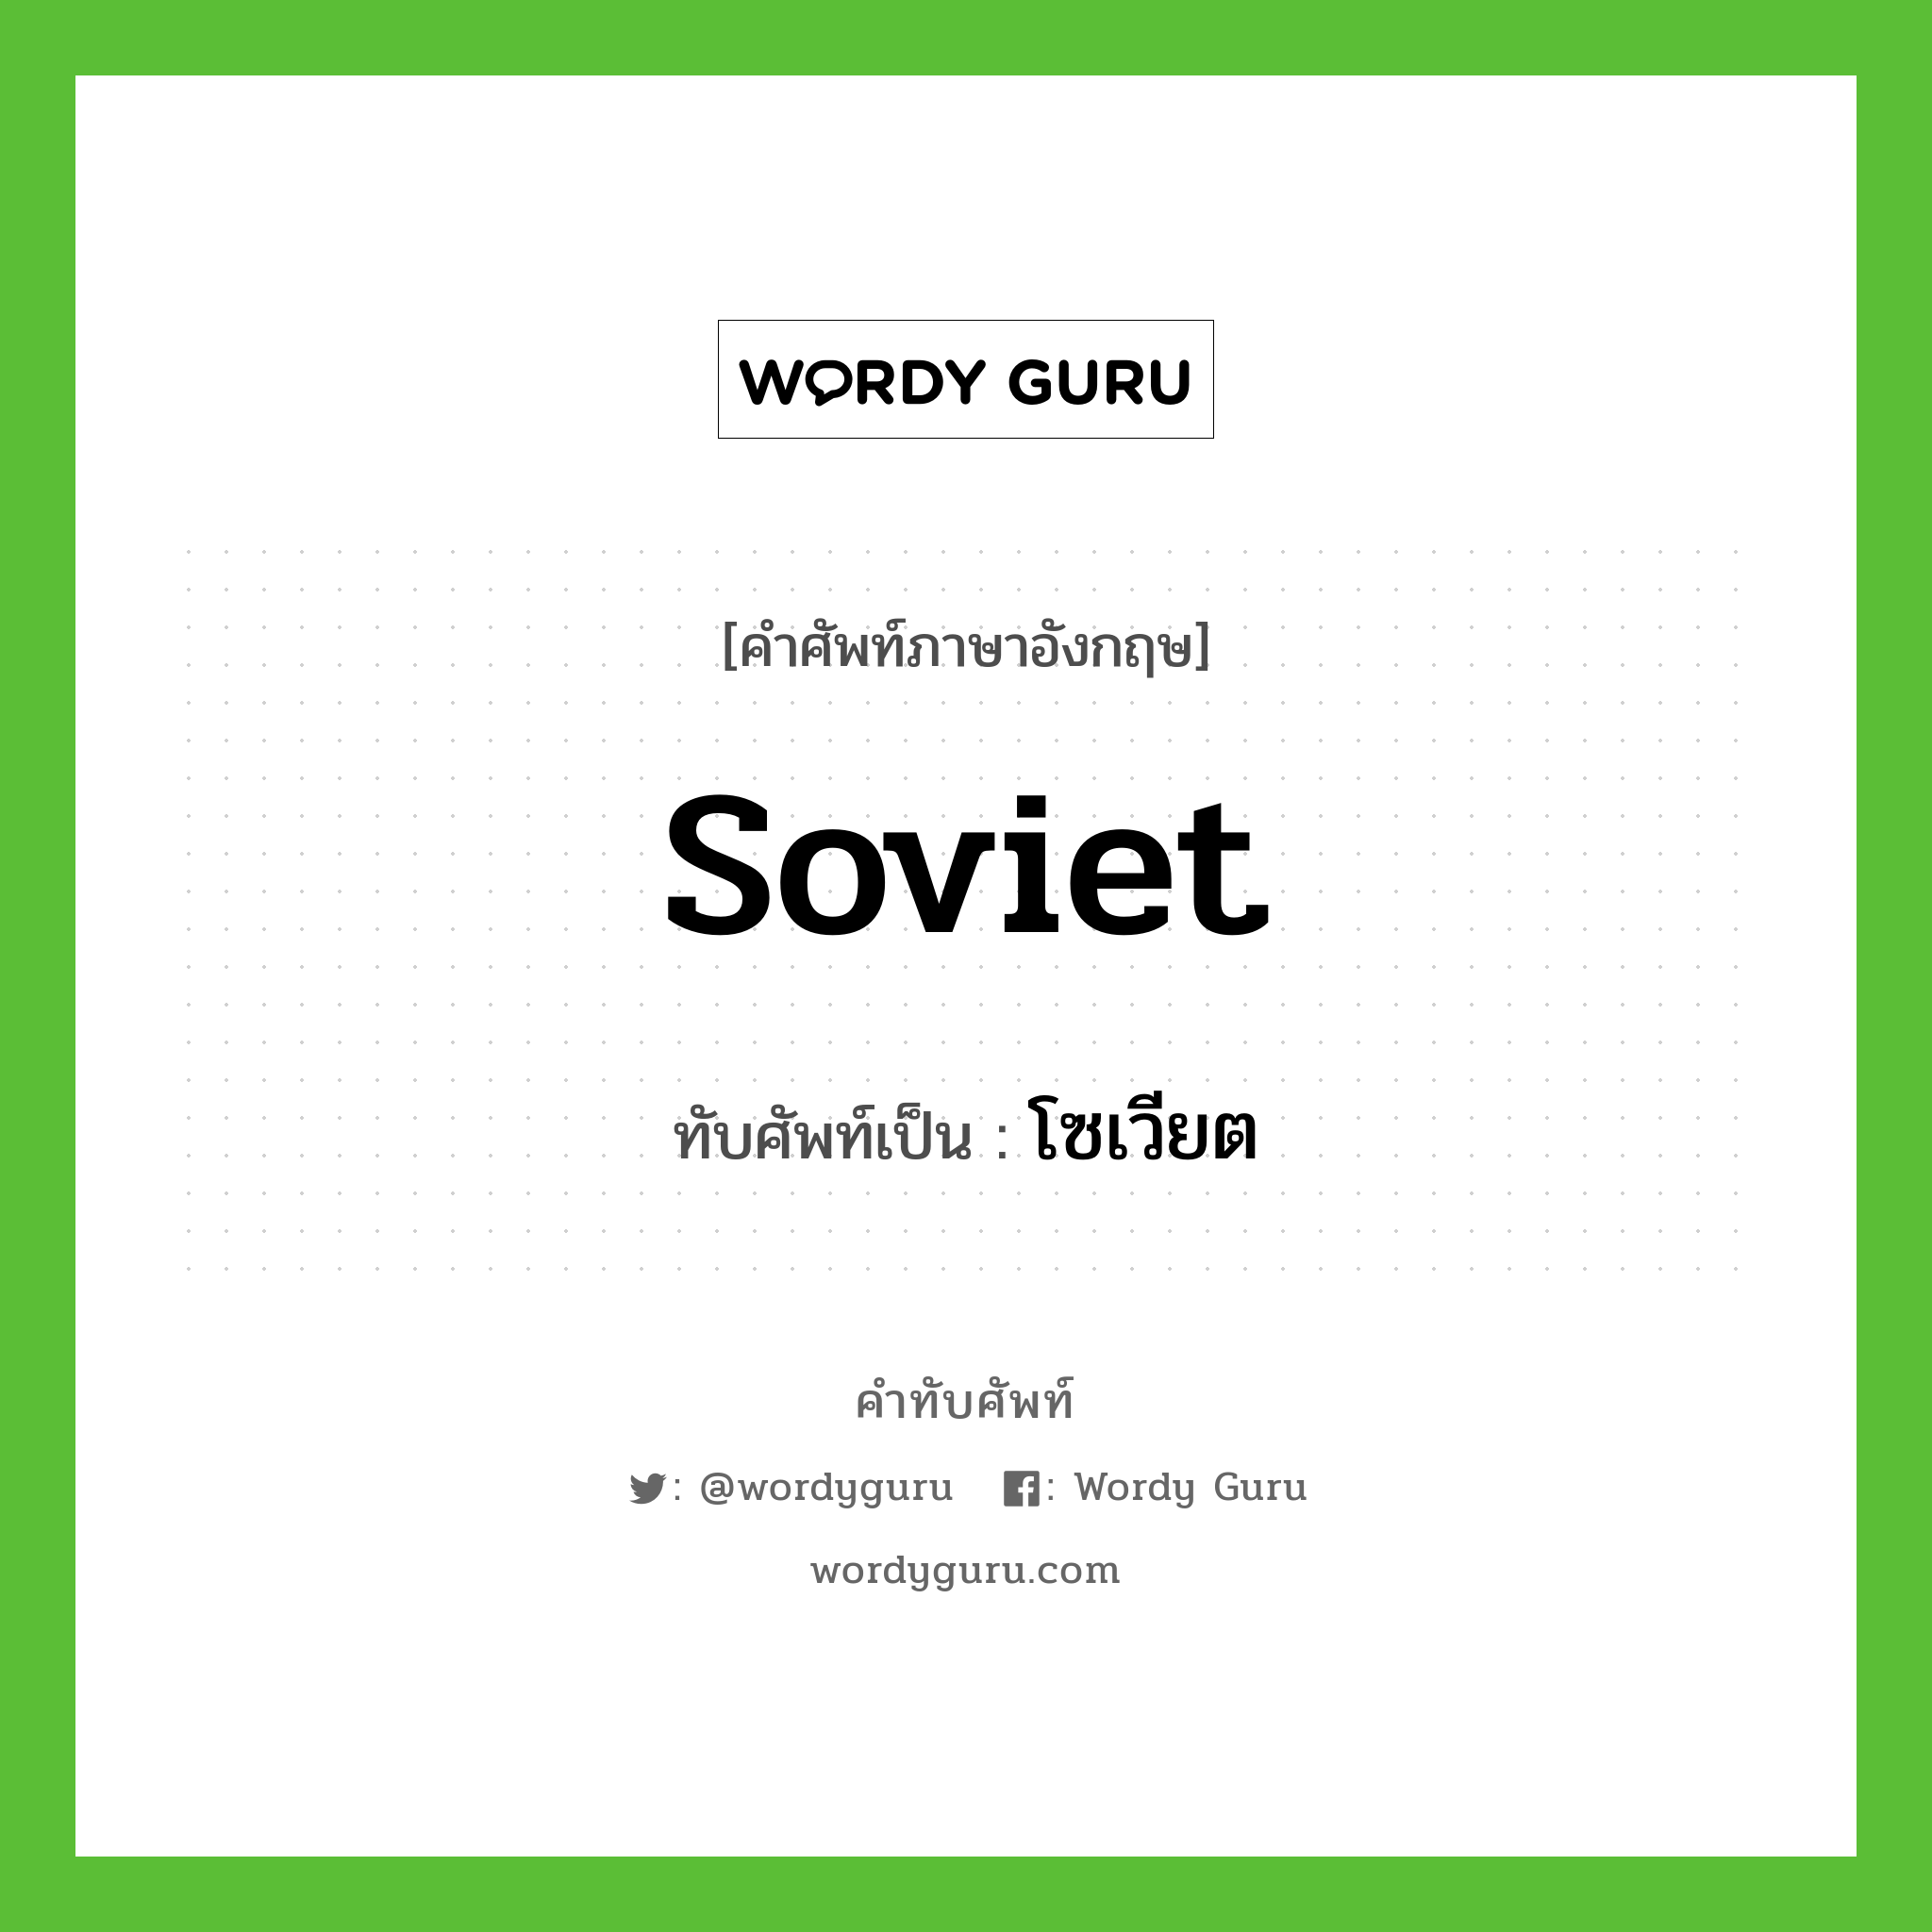 Soviet เขียนเป็นคำไทยว่าอะไร?, คำศัพท์ภาษาอังกฤษ Soviet ทับศัพท์เป็น โซเวียต